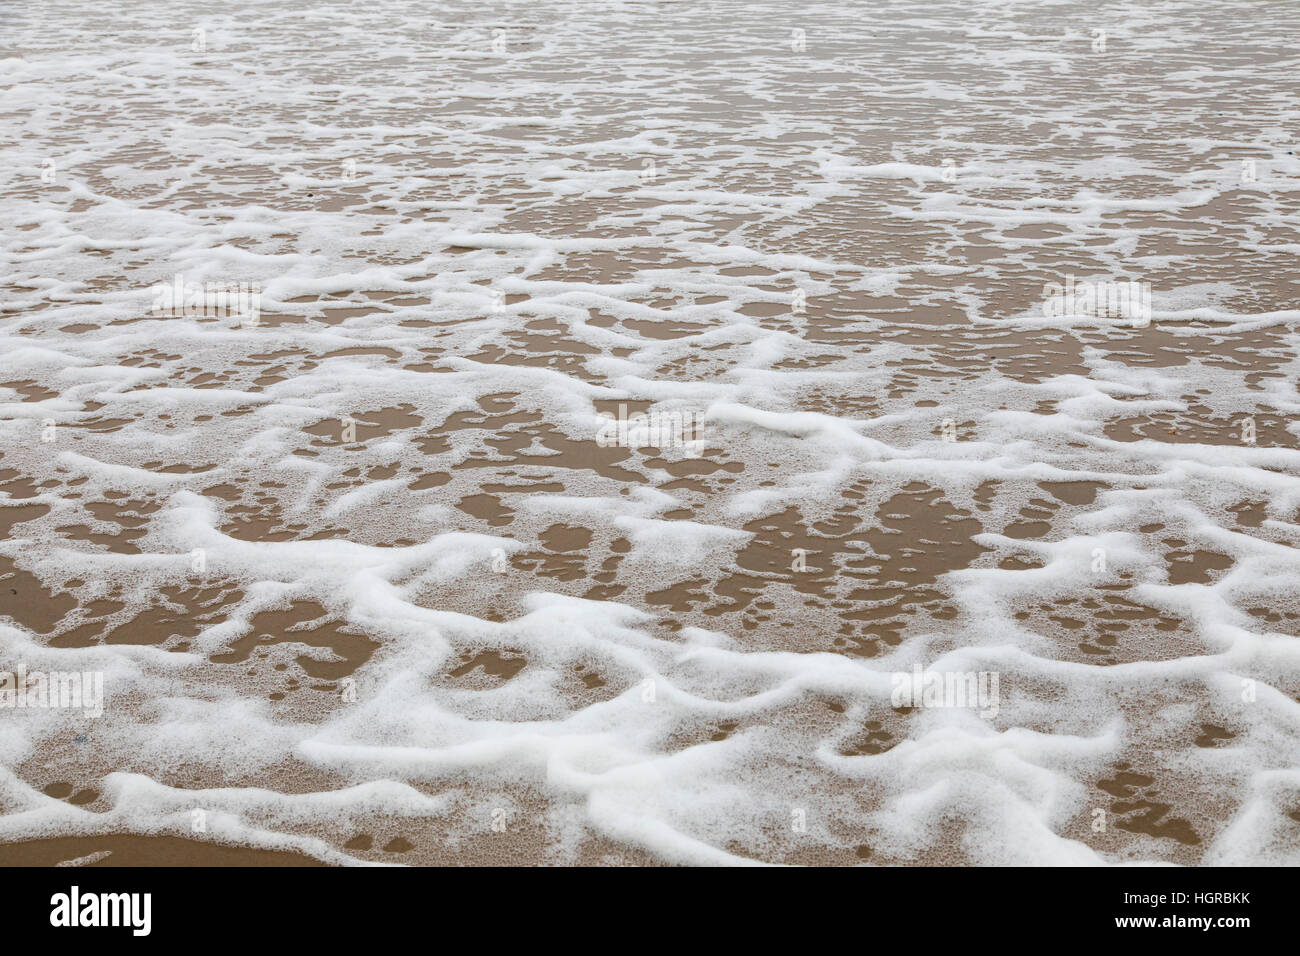 Schiuma di Mare, è formata da un forte vento e le particelle organiche presenti sulla superficie dell'acqua. Di solito queste particelle sono alghe o sali disciolti, Mare del Nord, str Foto Stock